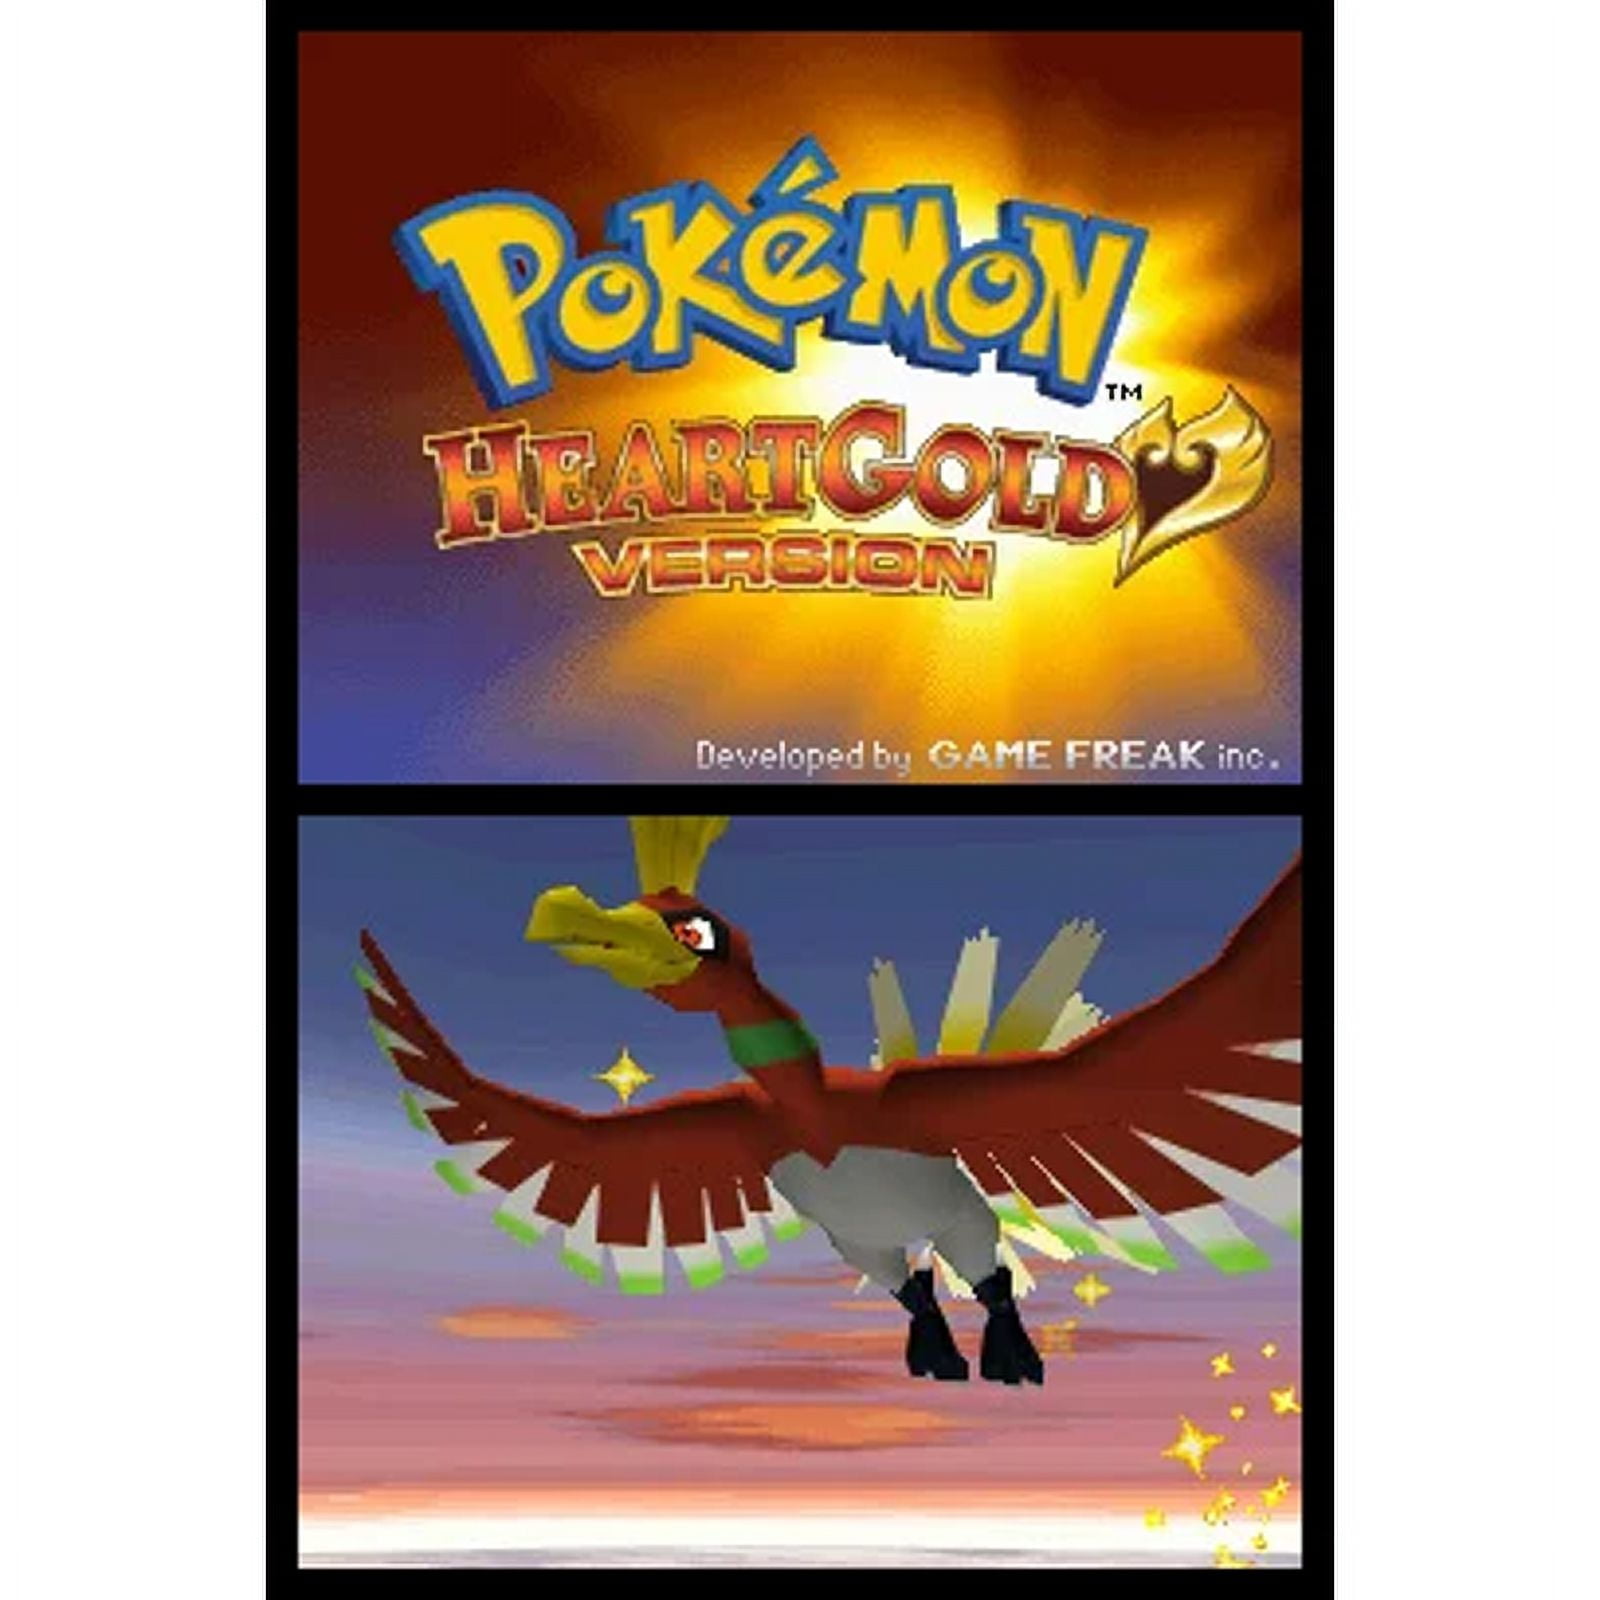 Pokemon HeartGold Version for DS - GameFAQs